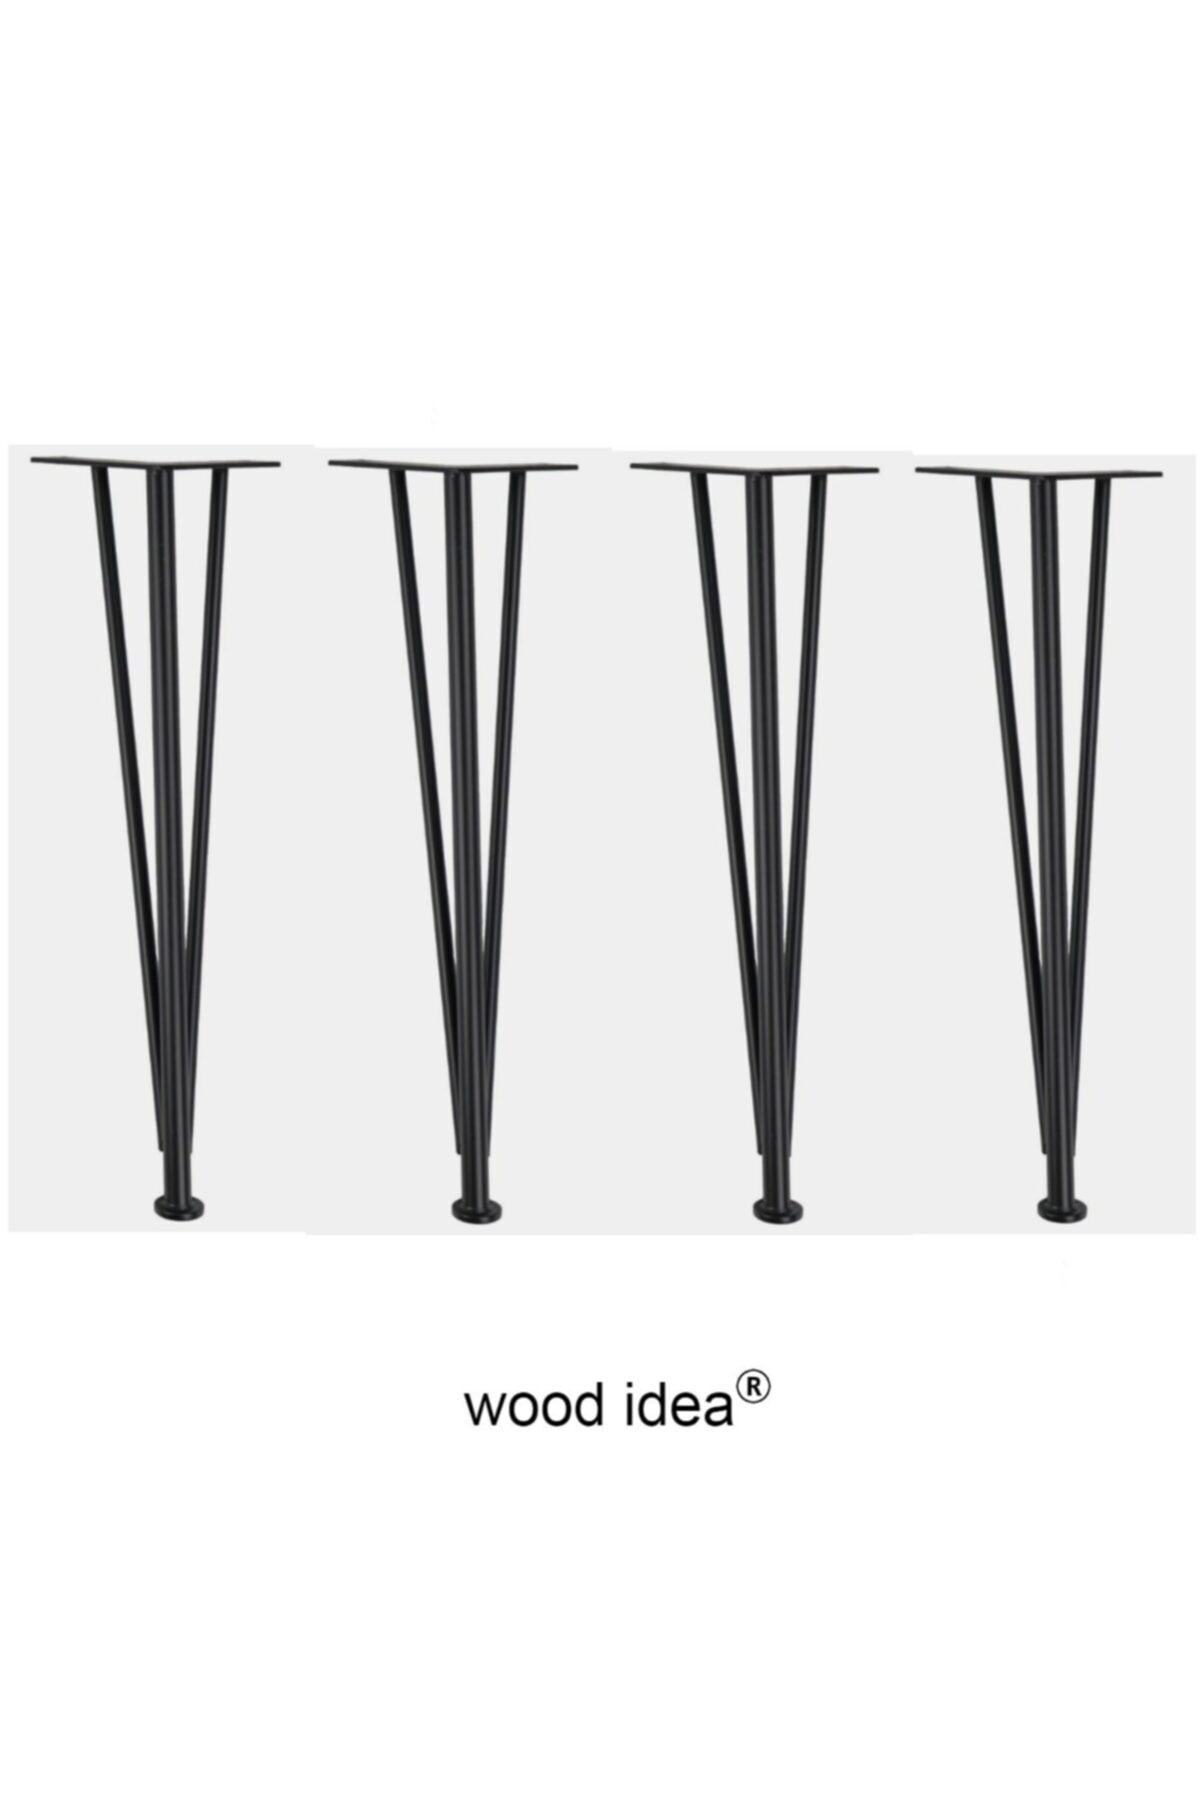 wood idea 4 Adet...vidalı Yükseklik Ayarlı...firkete Masa Ayağı.demir Masa Ayağı...masa,kütük,sehpa Demir Ayak